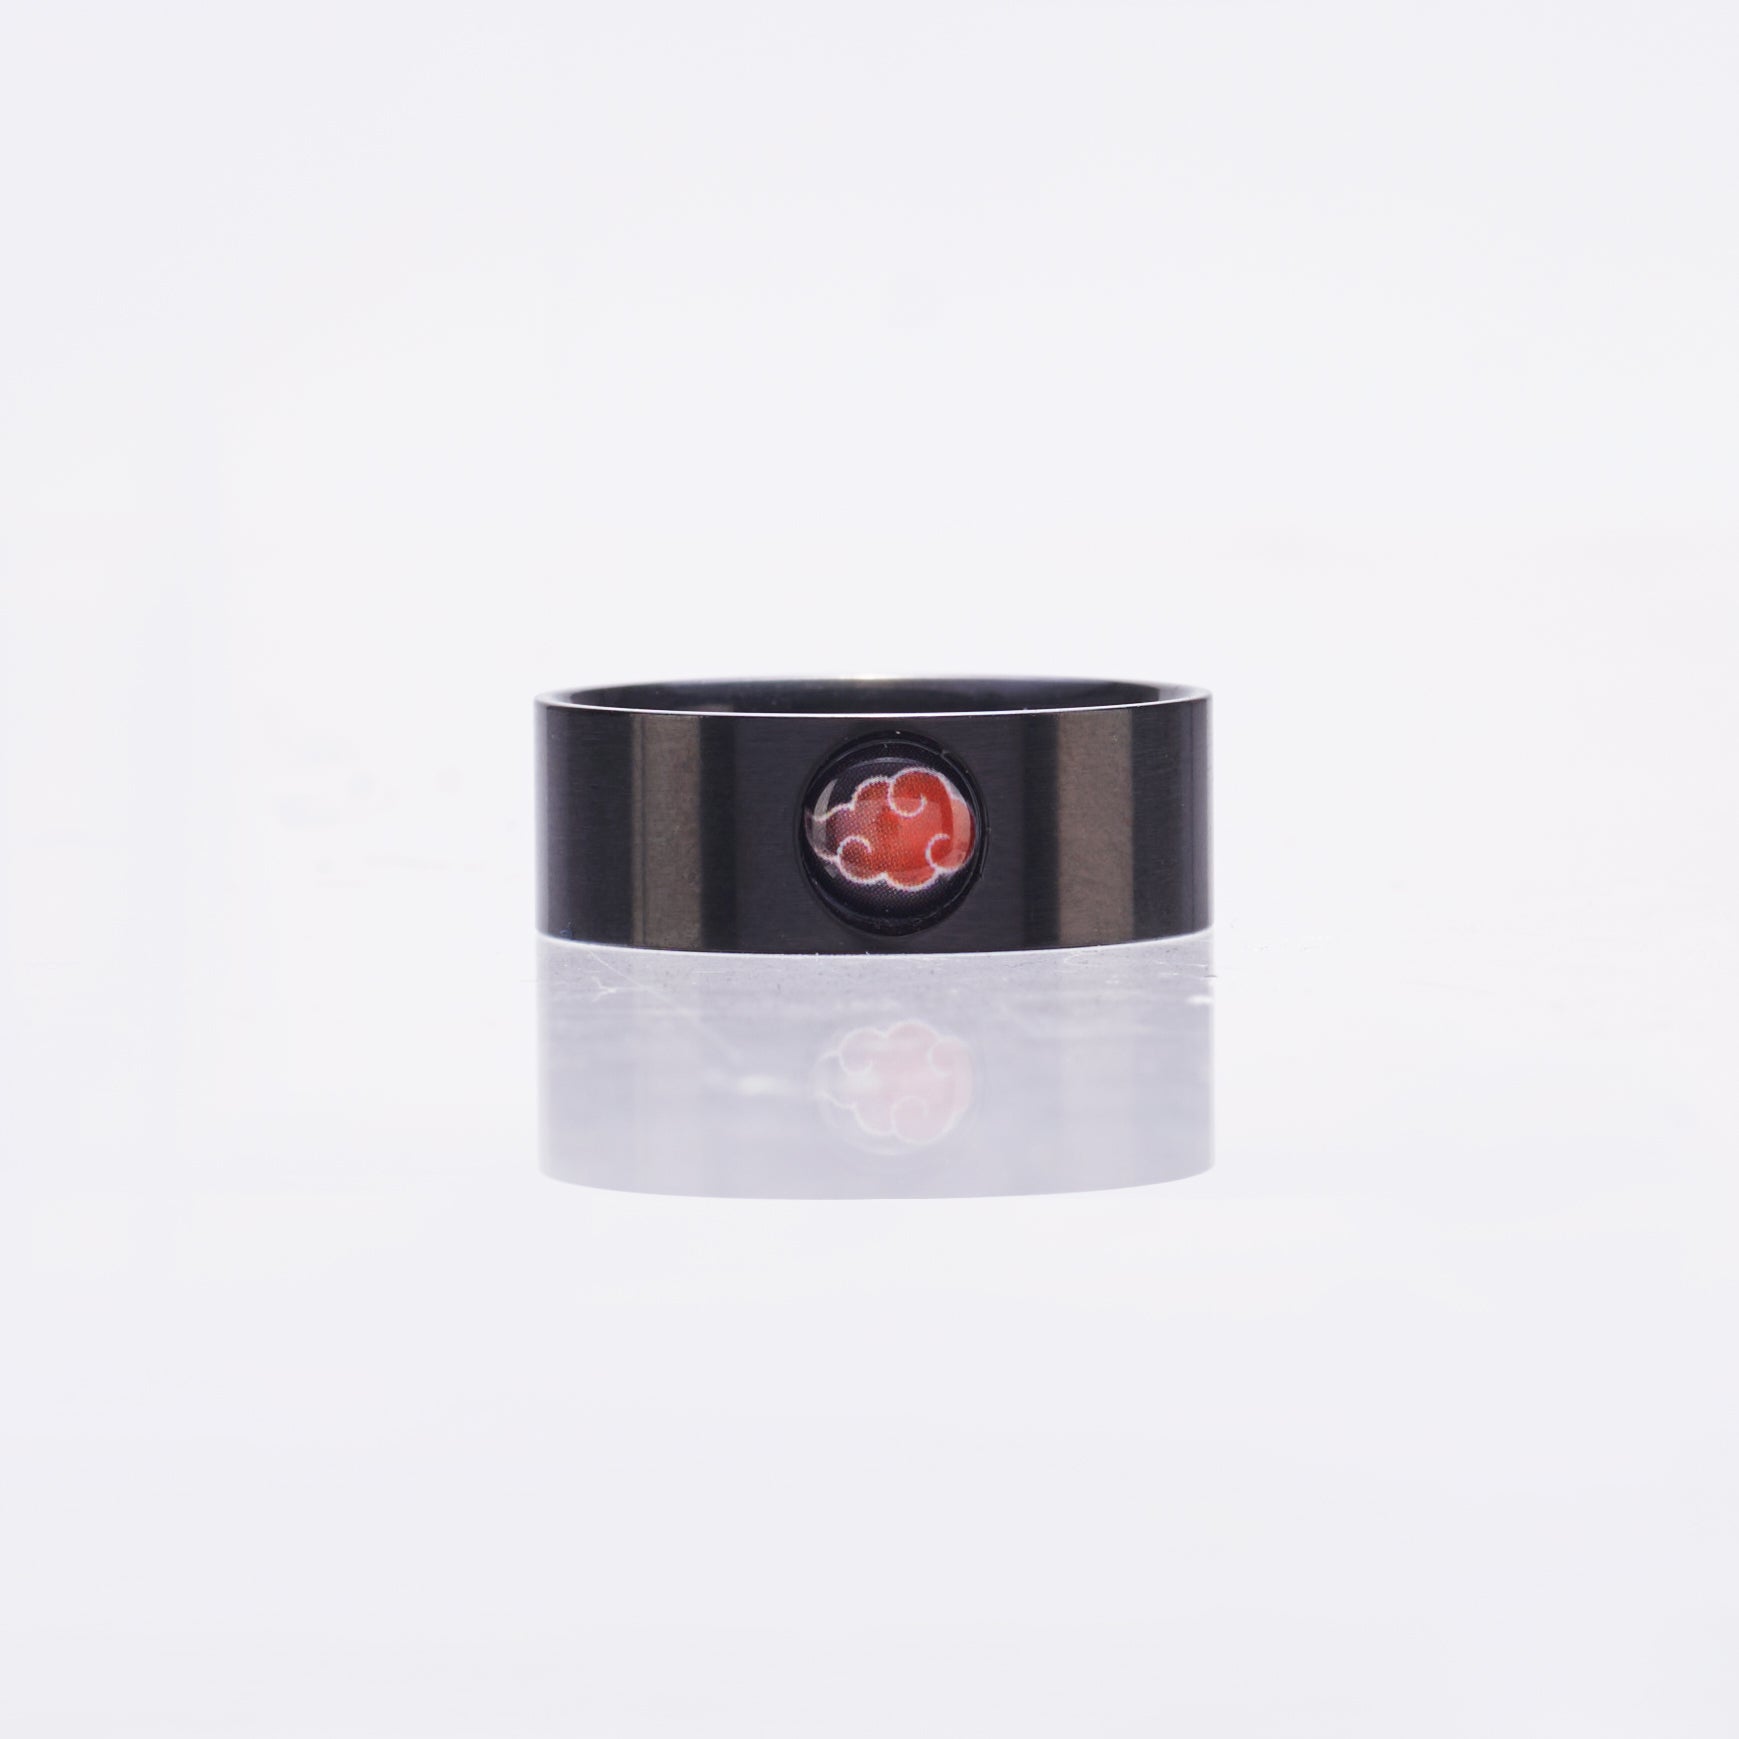 Stainless Akatsuki Ring Black